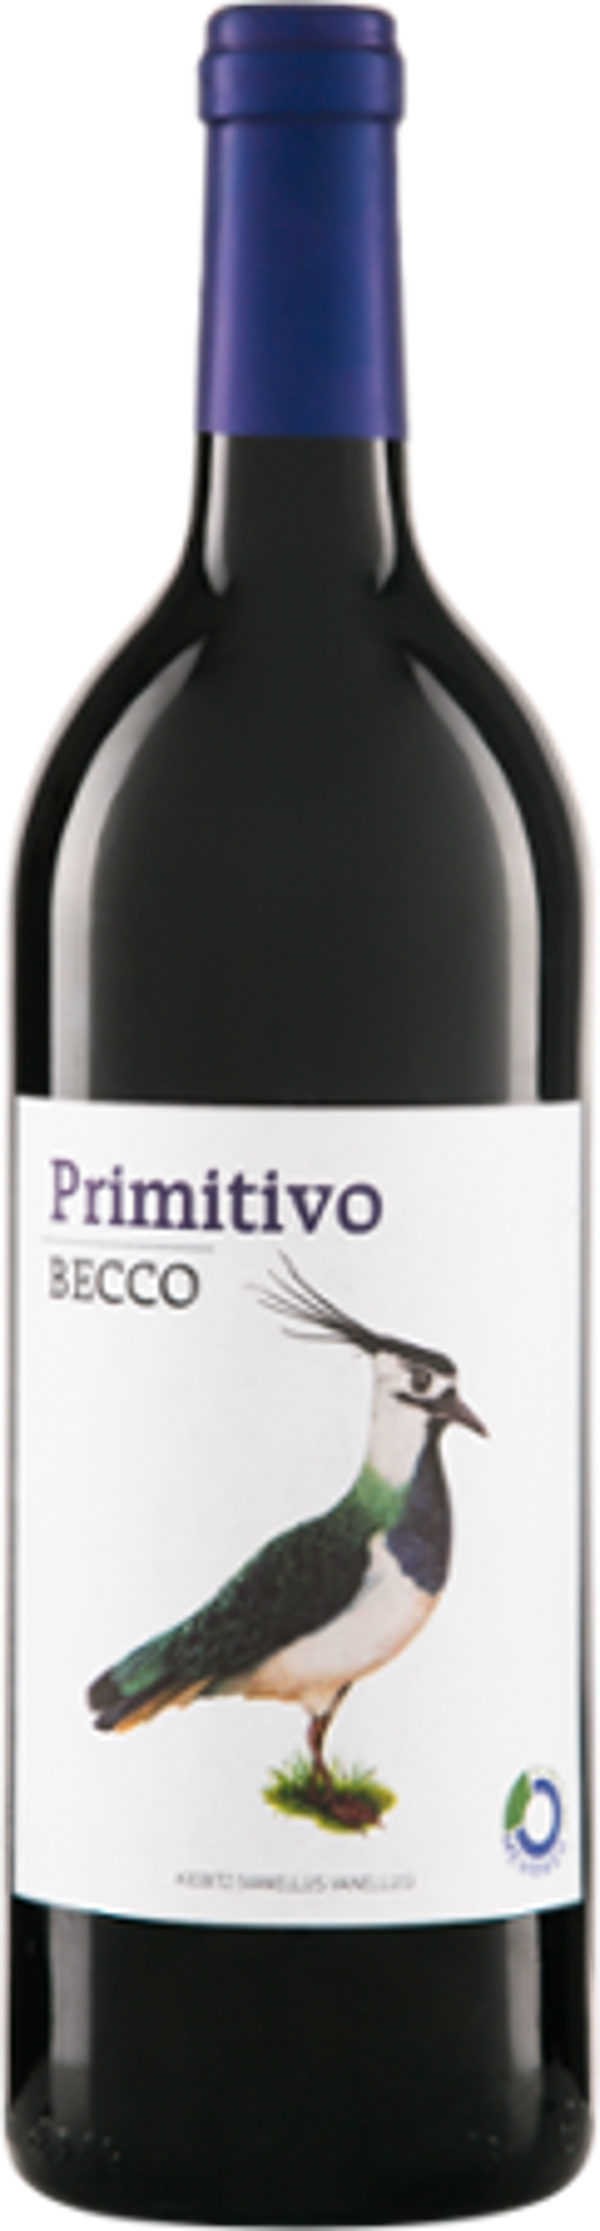 Produktfoto zu Becco Primitivo IGT Puglia 1l